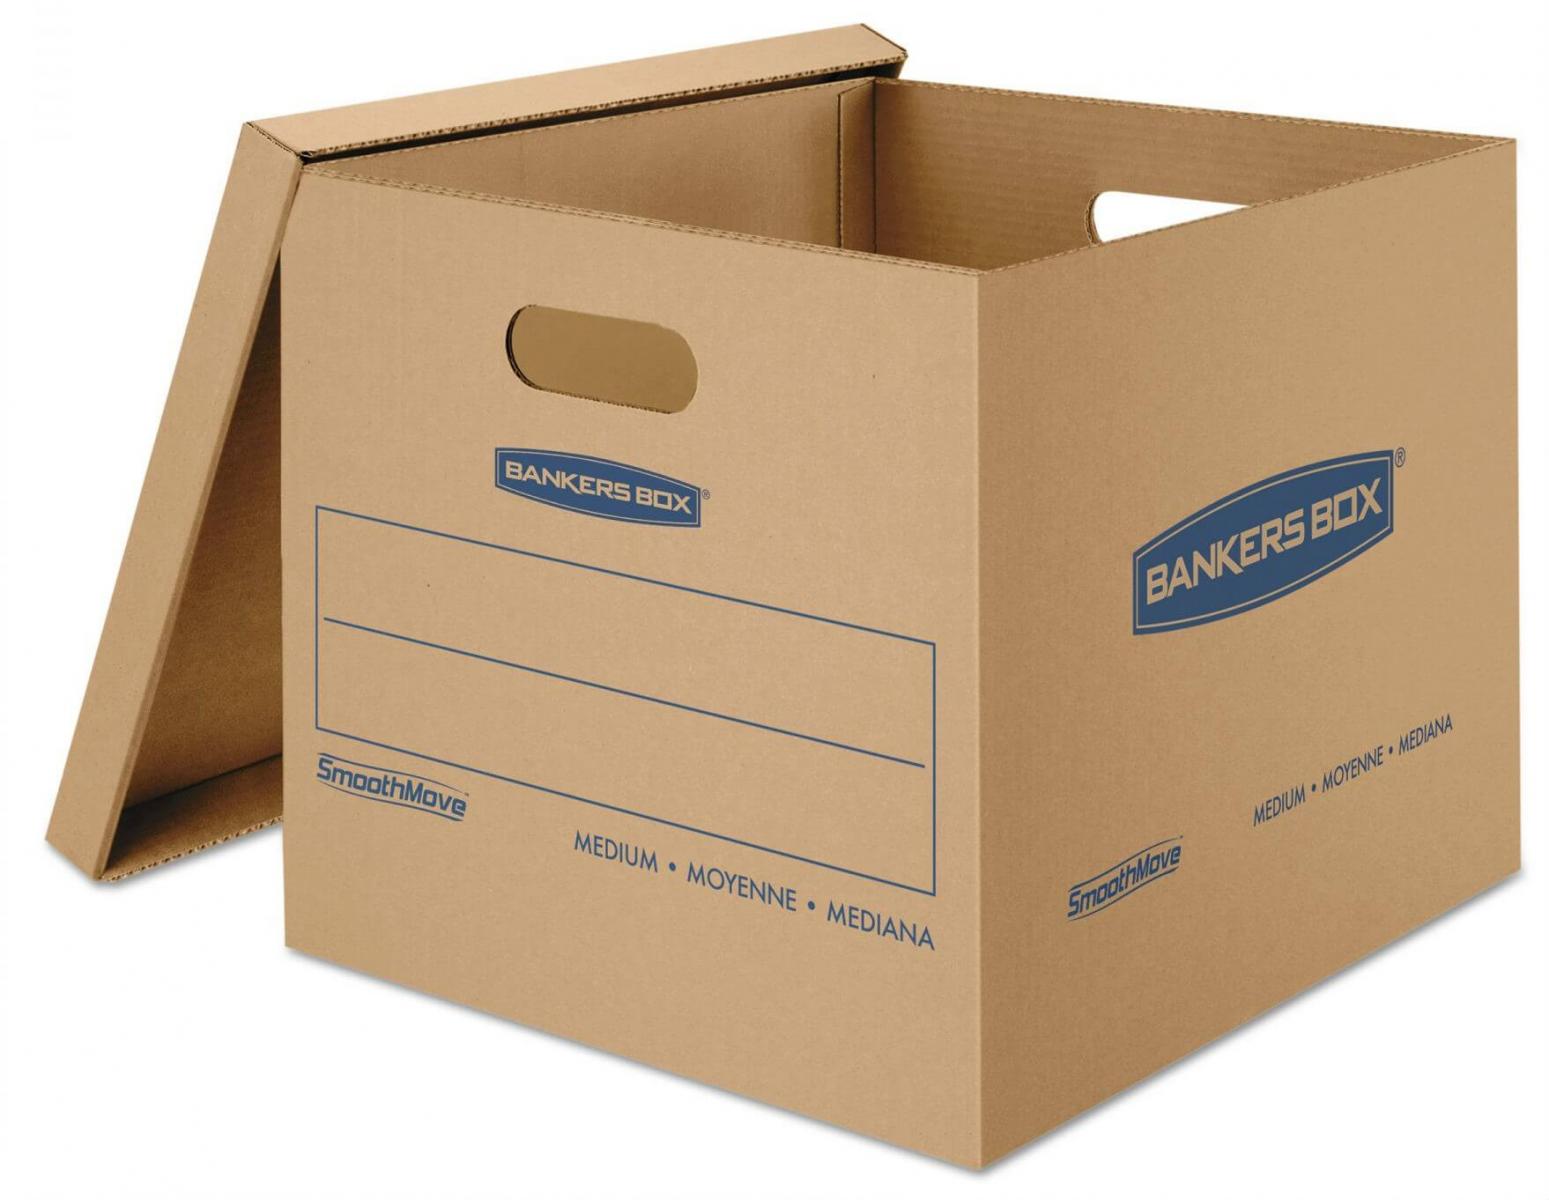 Cách sản xuất thùng carton, Công ty thùng carton 247, In thùng carton theo yêu cầu, Sản xuất hộp carton theo yêu cầu, Sản xuất thùng carton, Thùng carton 247, Thùng carton 3 lớp là gì, Thùng carton theo yêu cầu